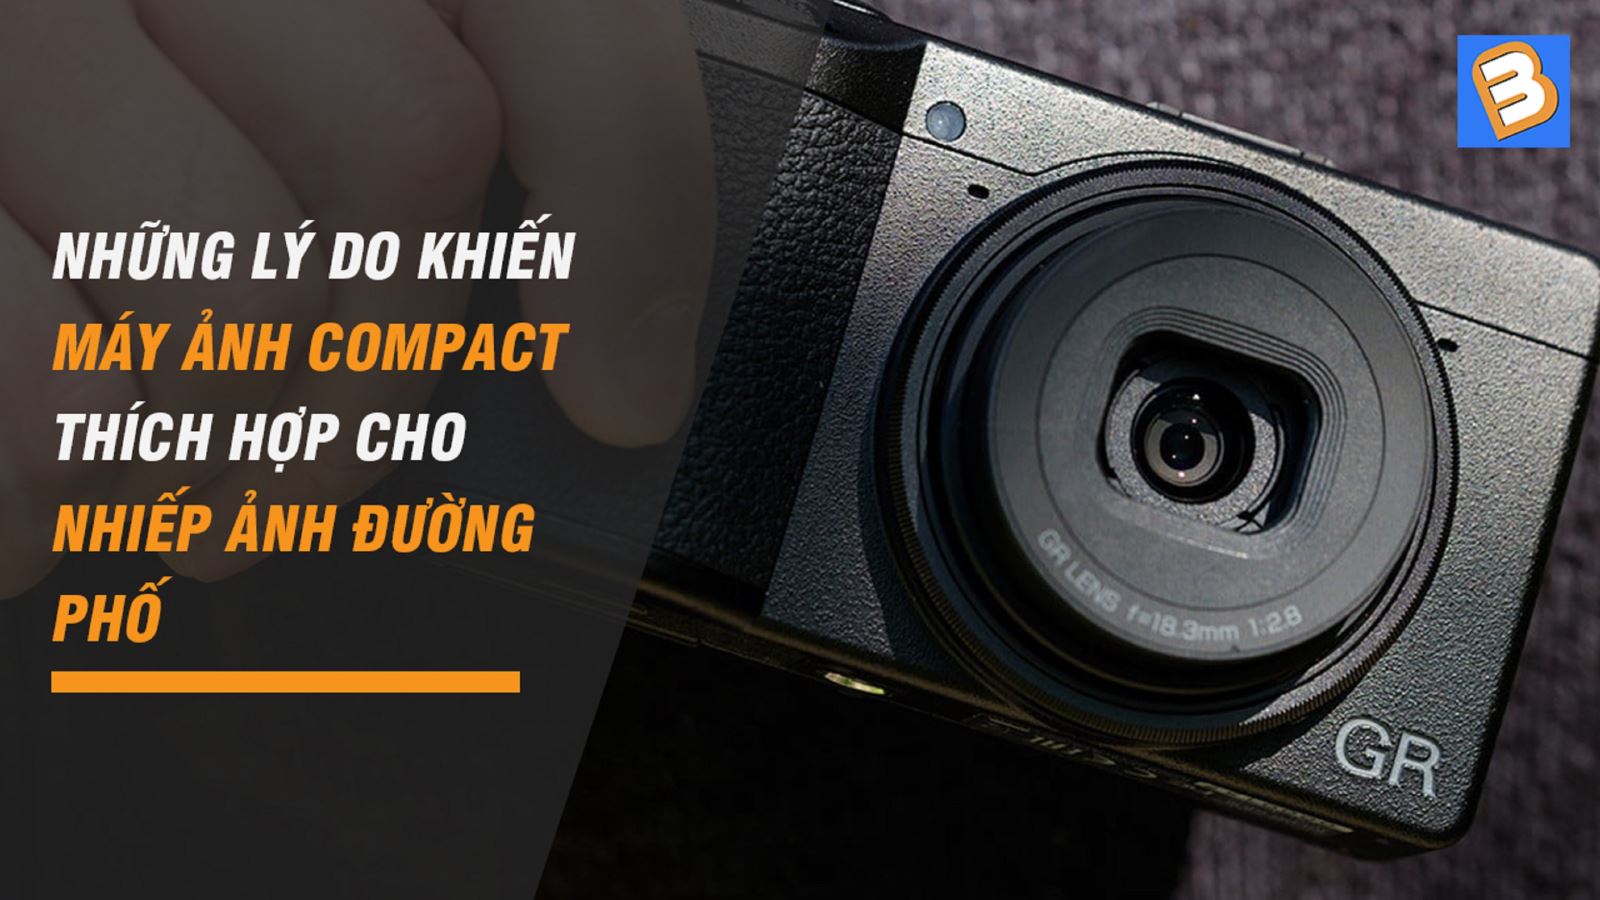 Những lý do khiến máy ảnh Compact thích hợp cho nhiếp ảnh đường phố